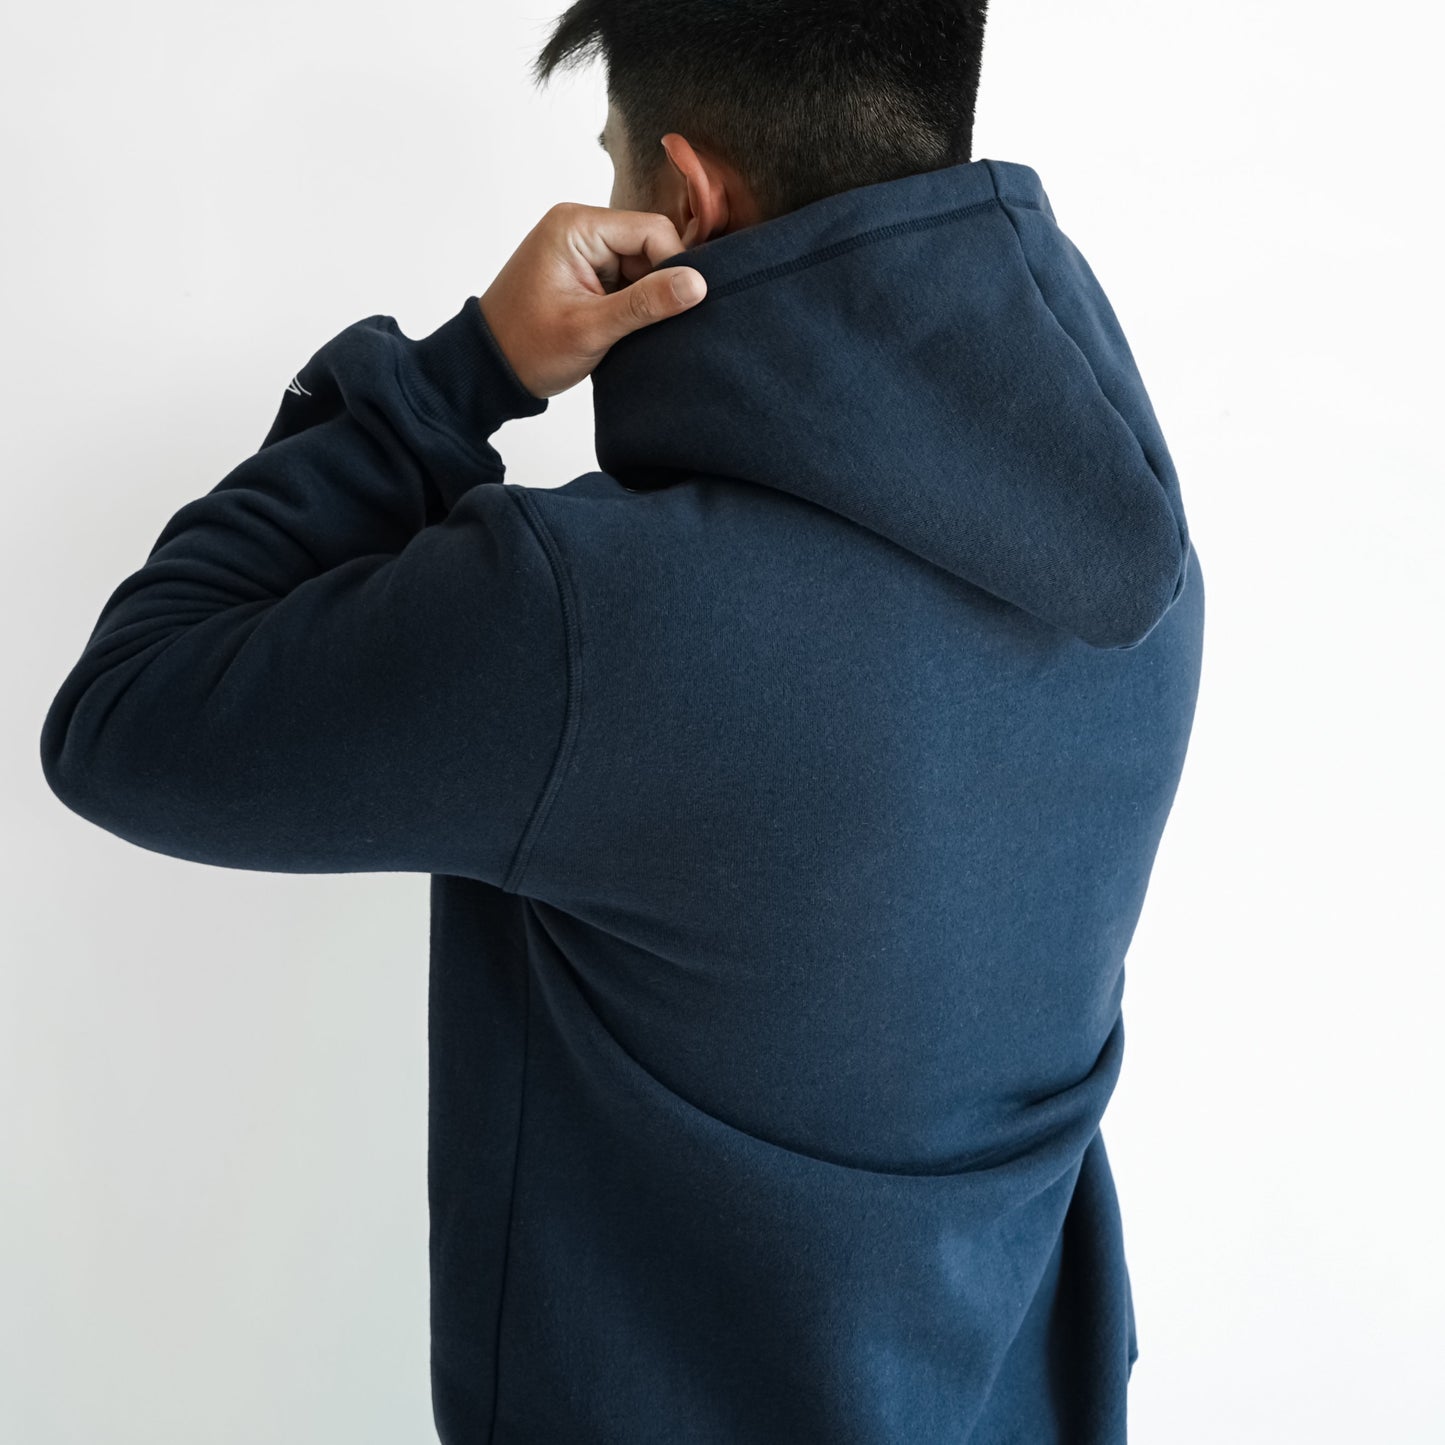 man in navy blue hoodie holding the hood